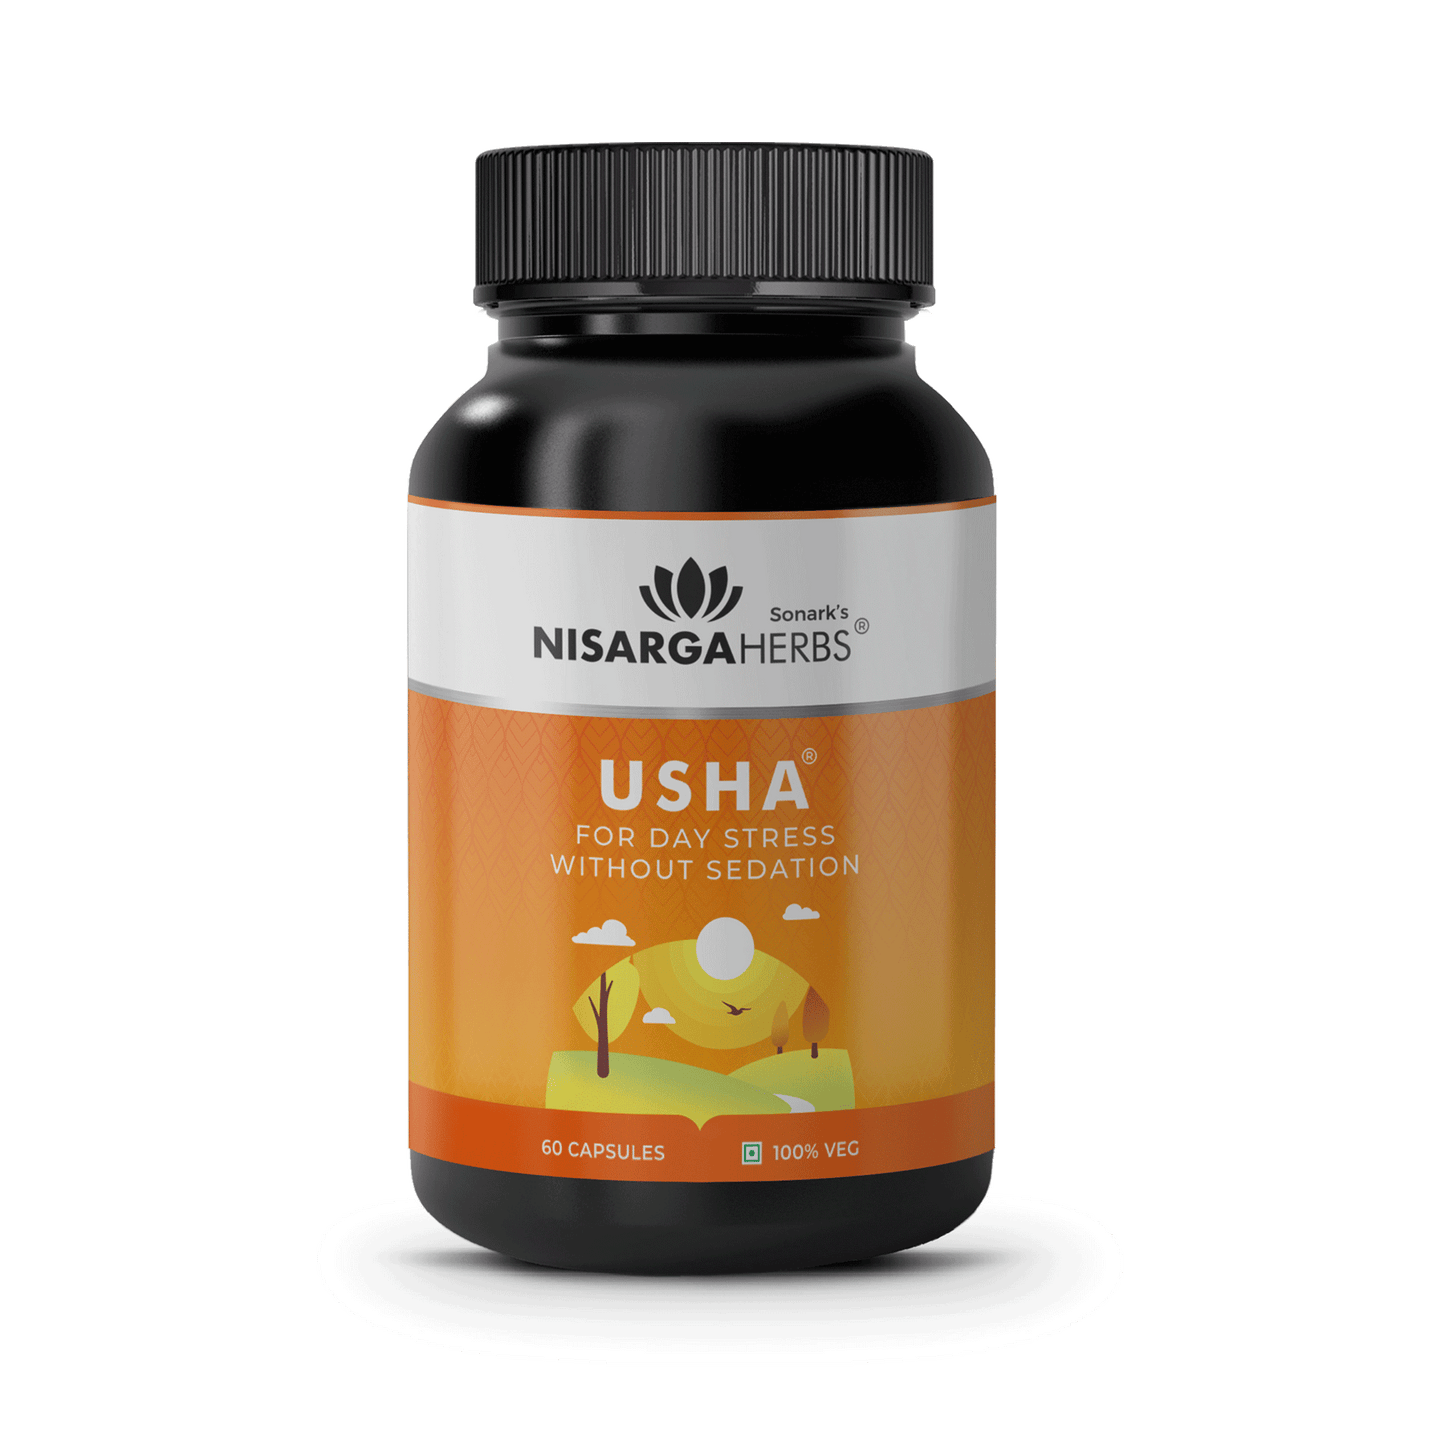 Usha - Ayurvedic capsules for reducing daily stress and brain fog